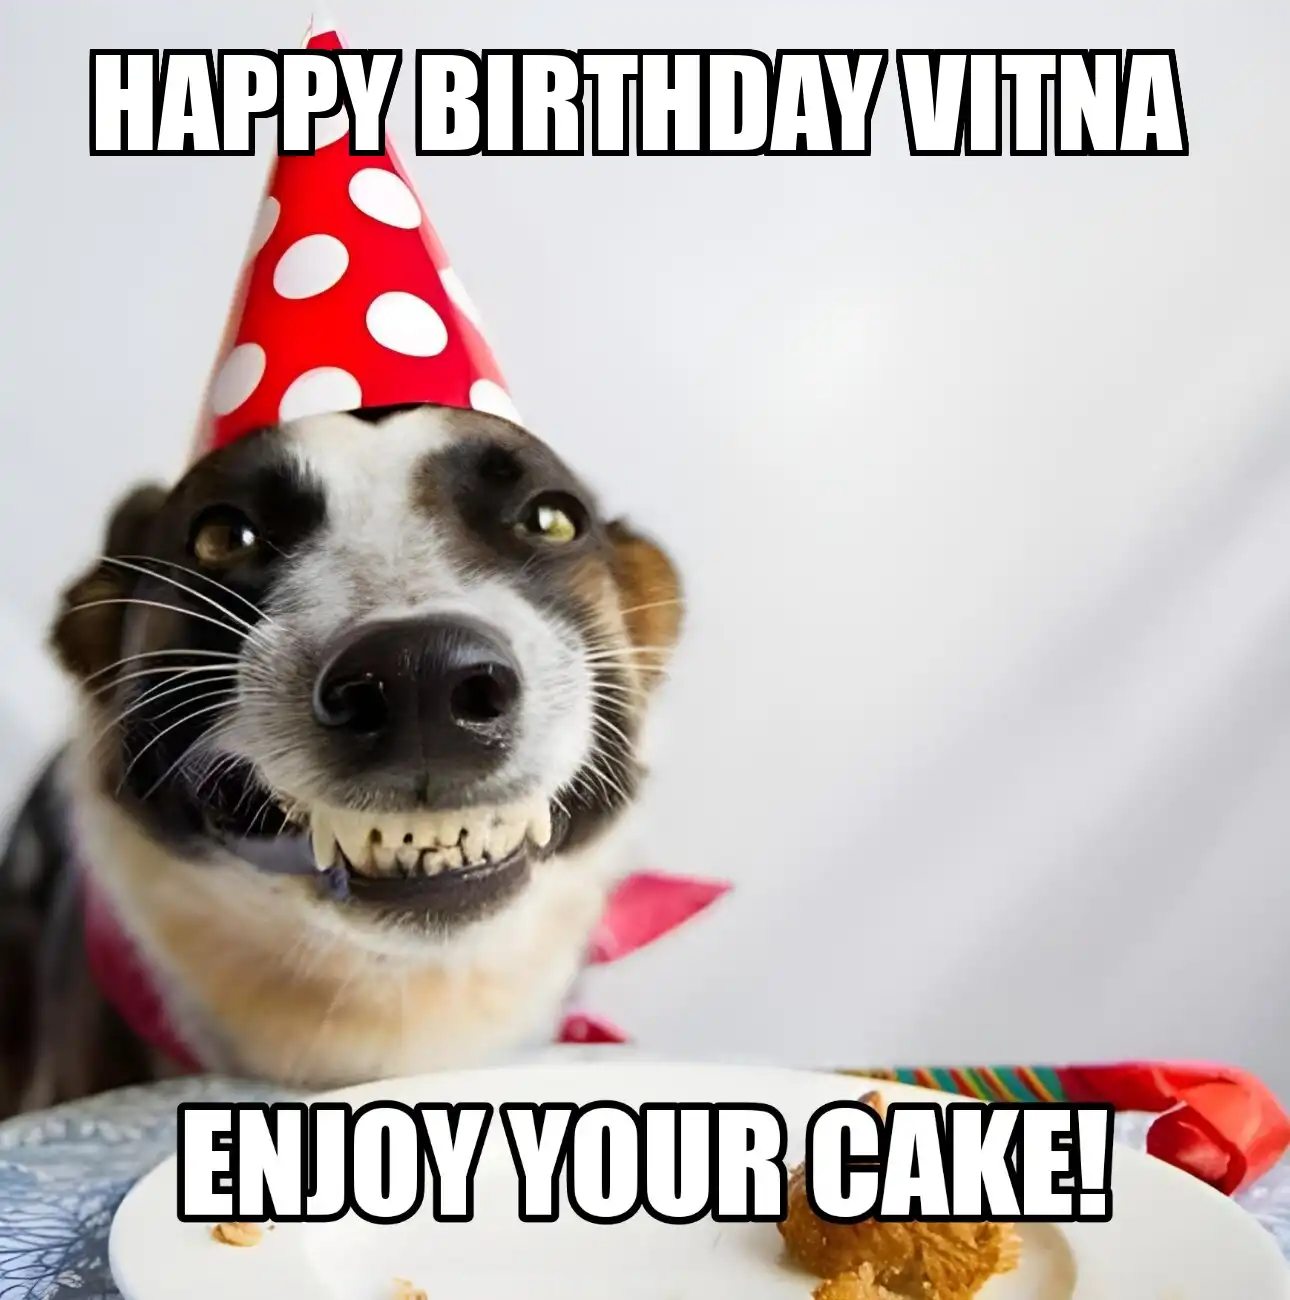 Happy Birthday Vitna Enjoy Your Cake Dog Meme